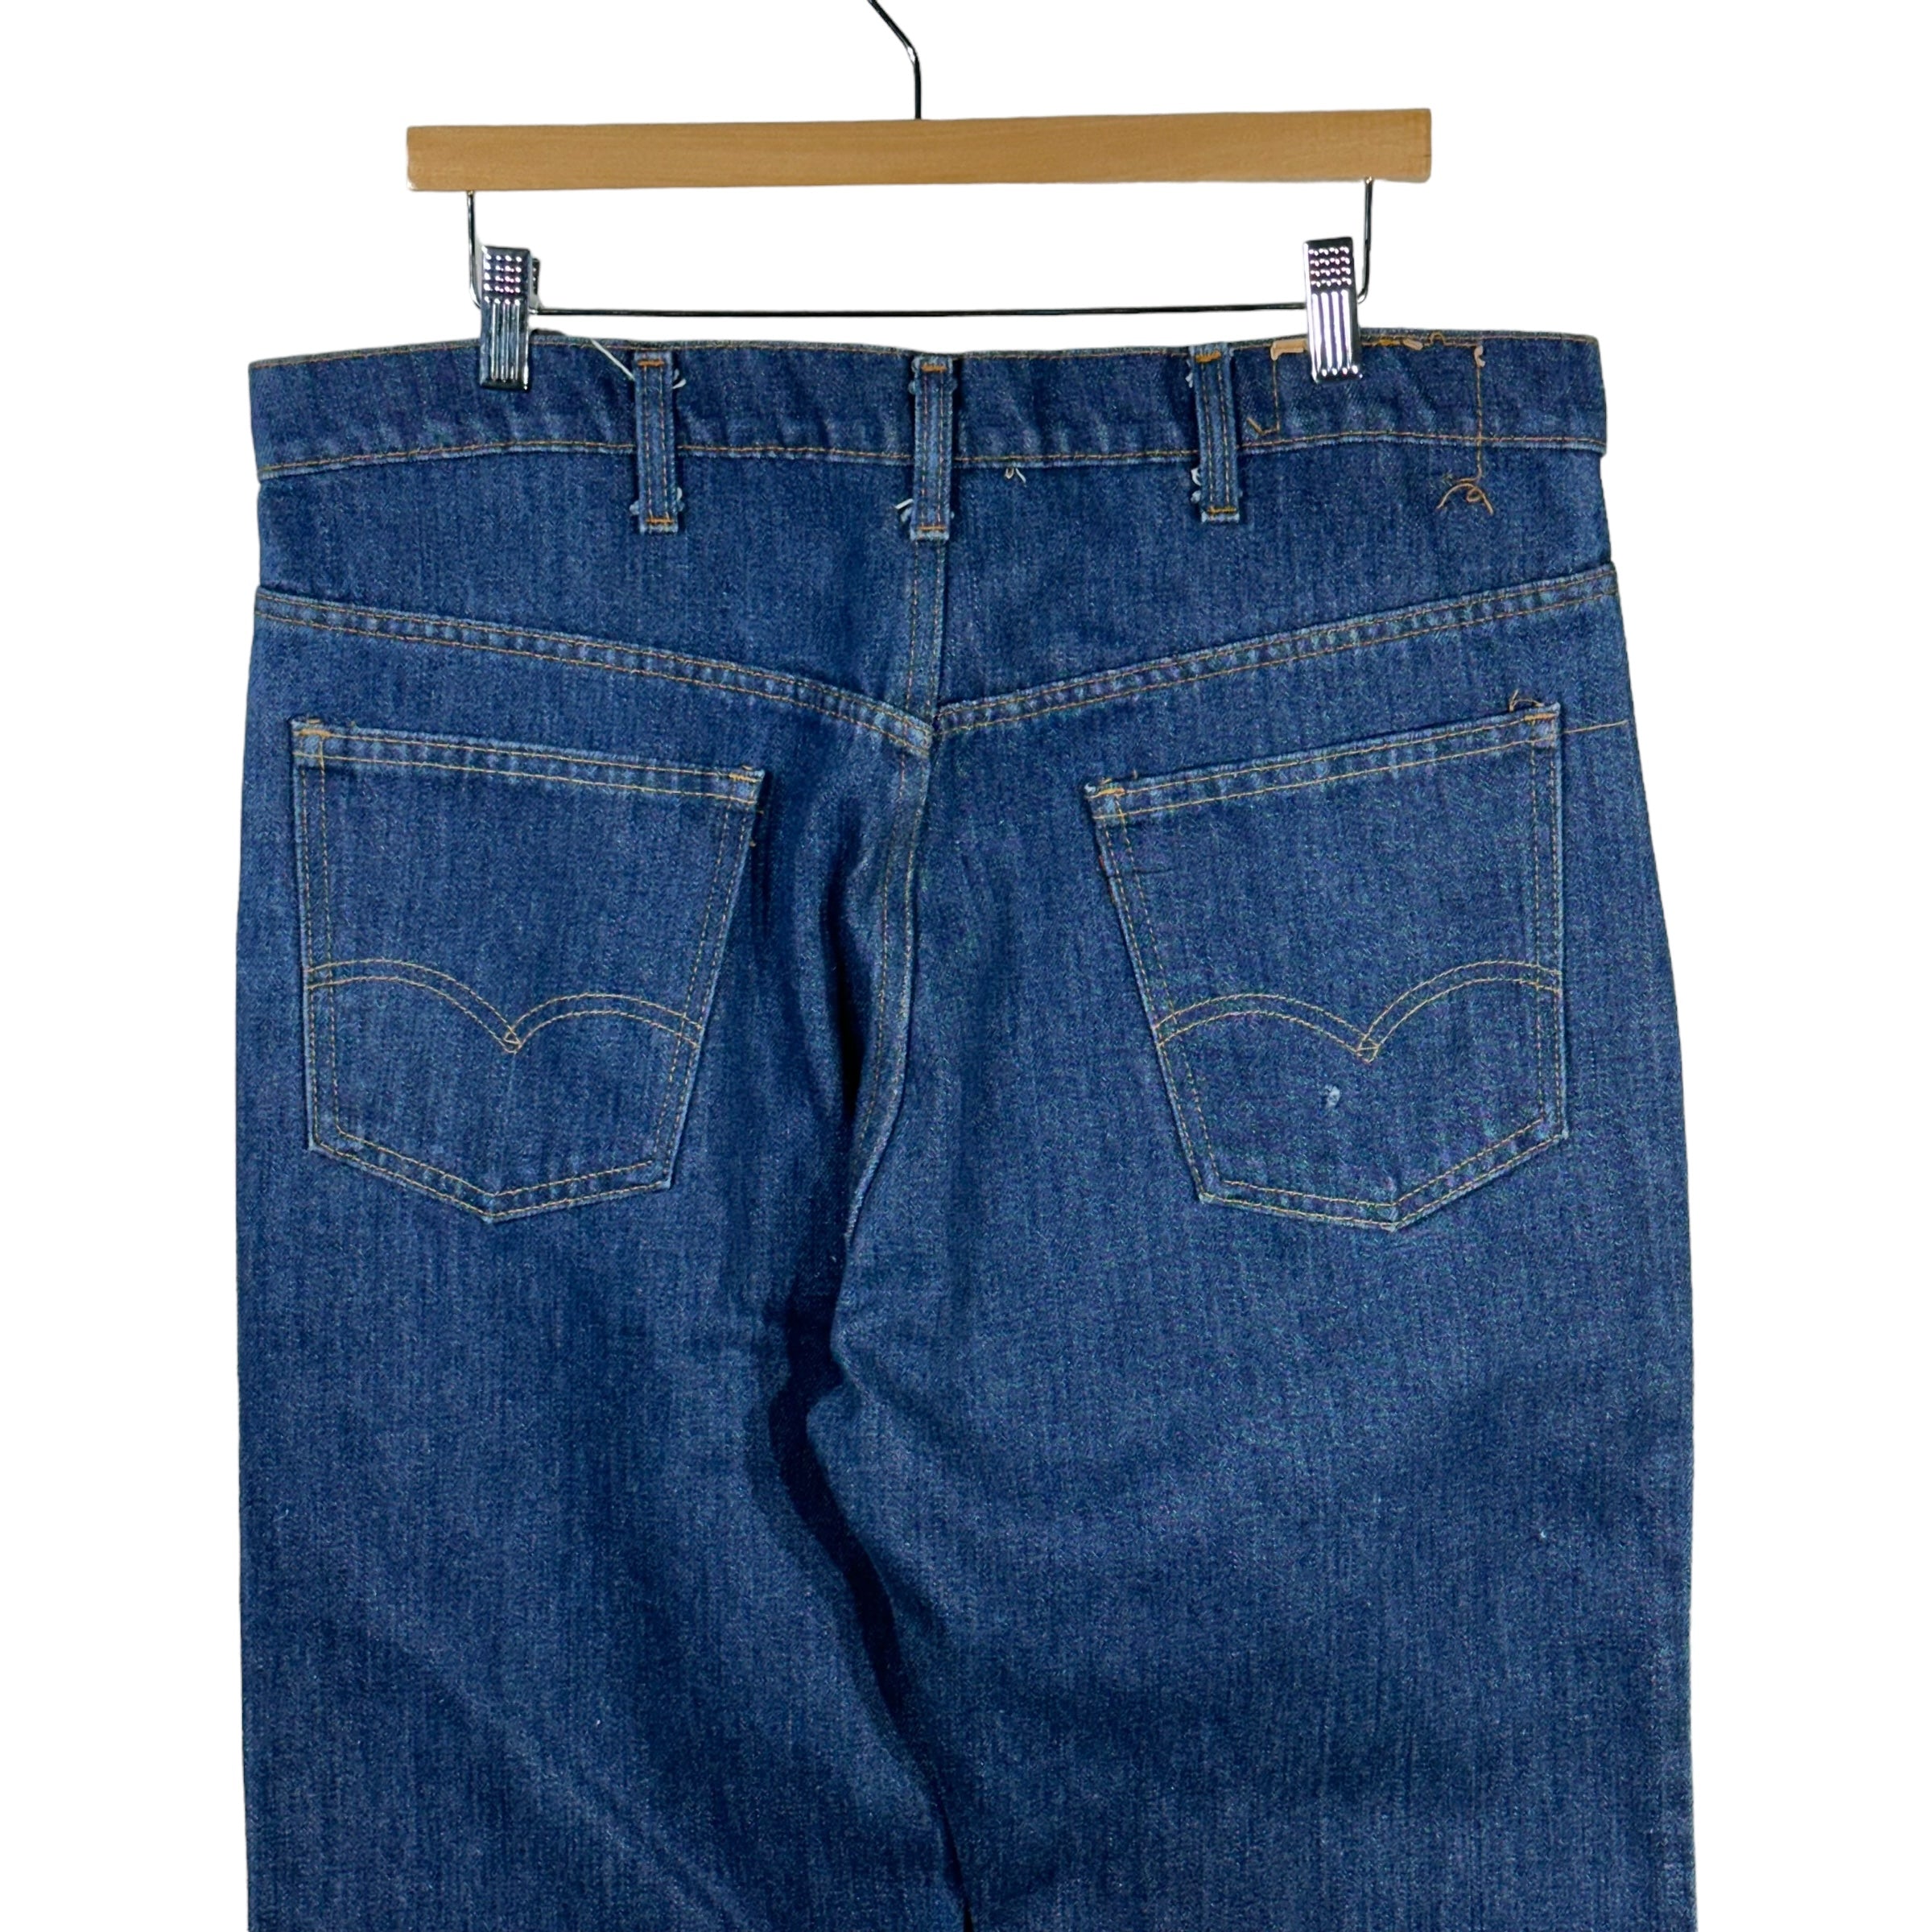 Vintage Levis Denim Jeans